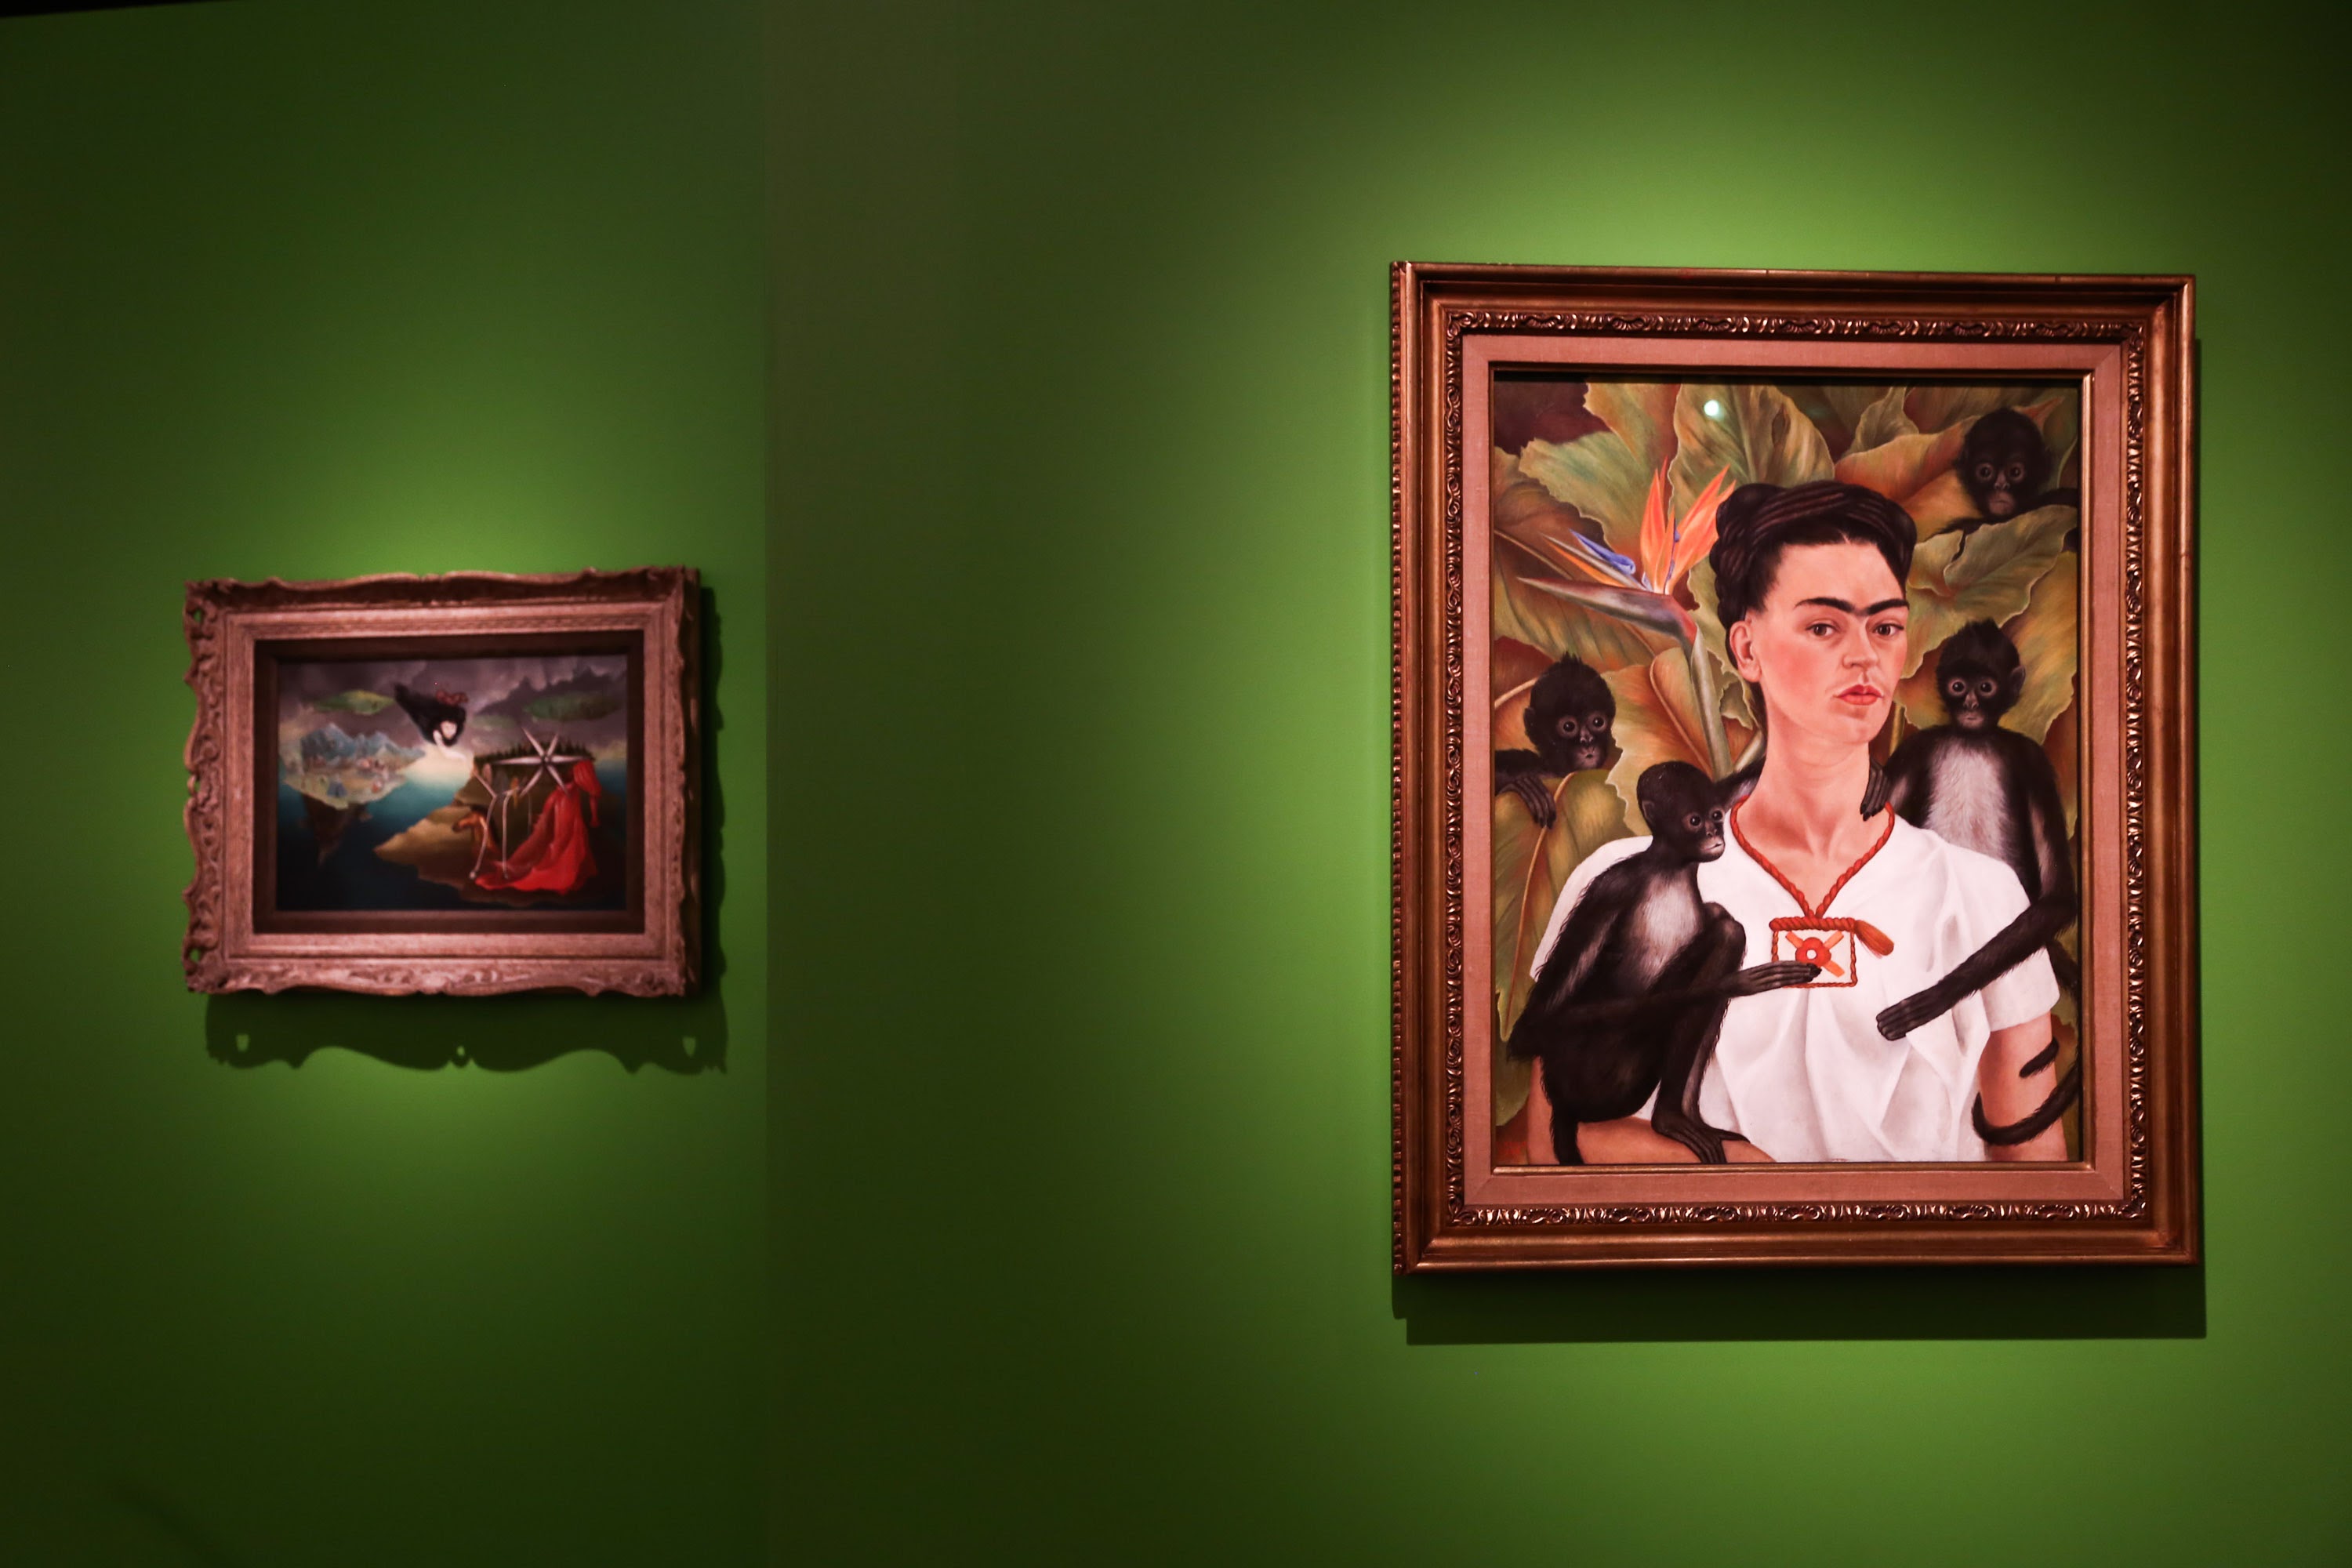 Exposição Frida Kahlo - Caixa Cultural Brasilia 2